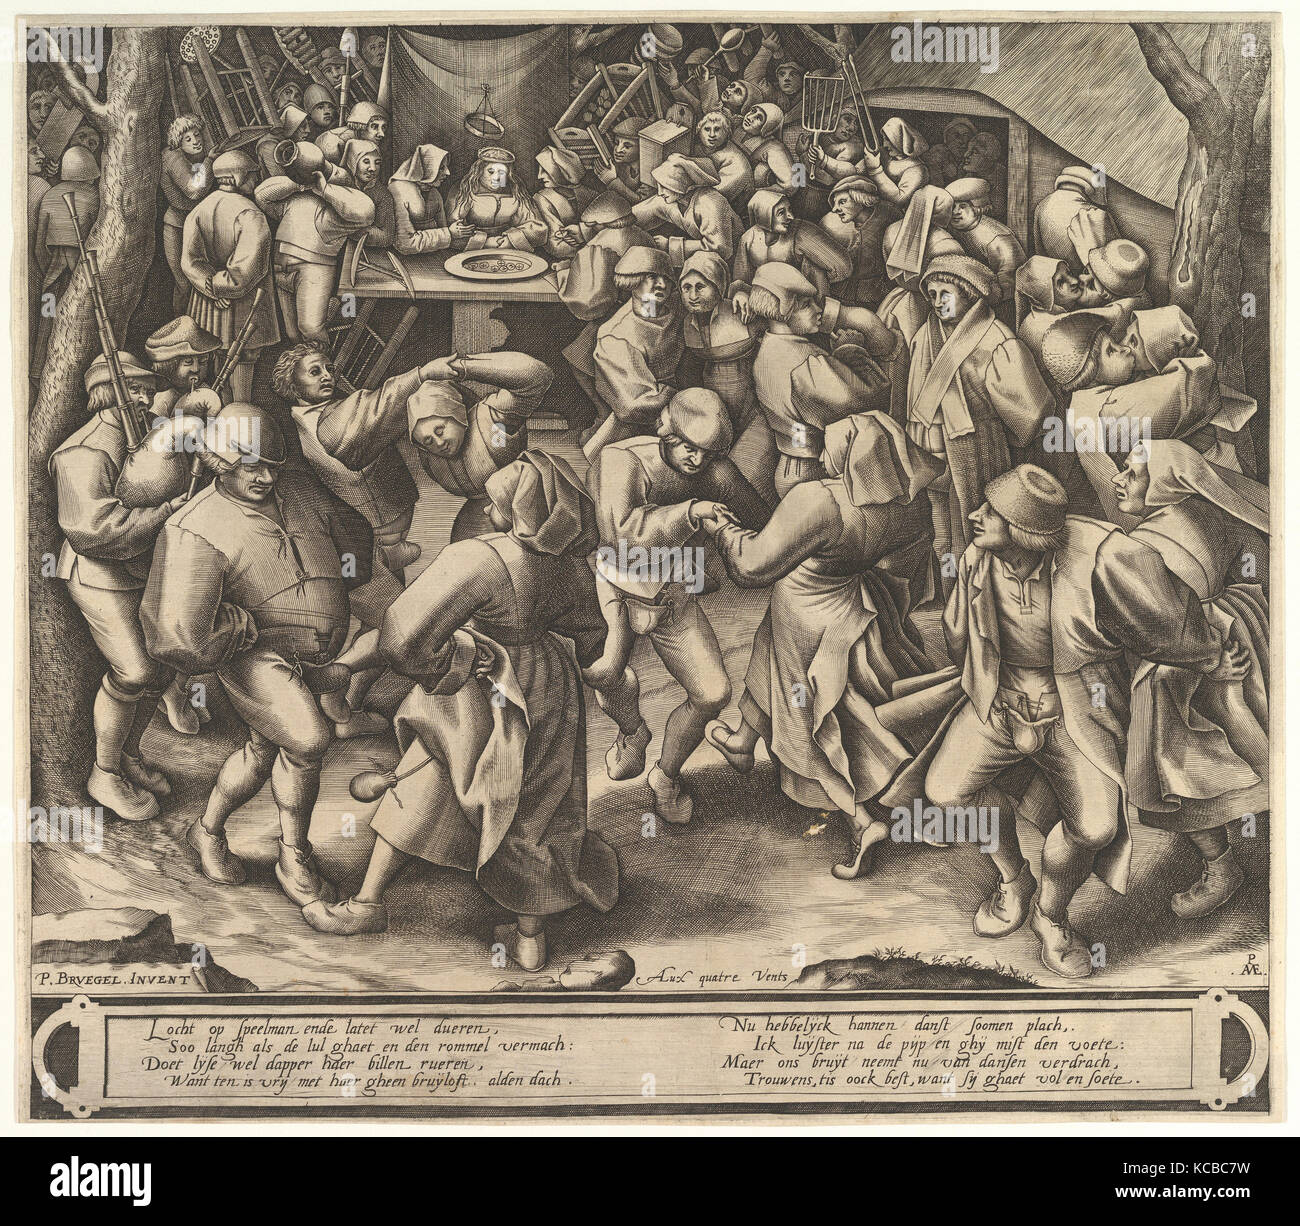 The Peasant Wedding Dance, Pieter van der Heyden, after 1570 Stock Photo